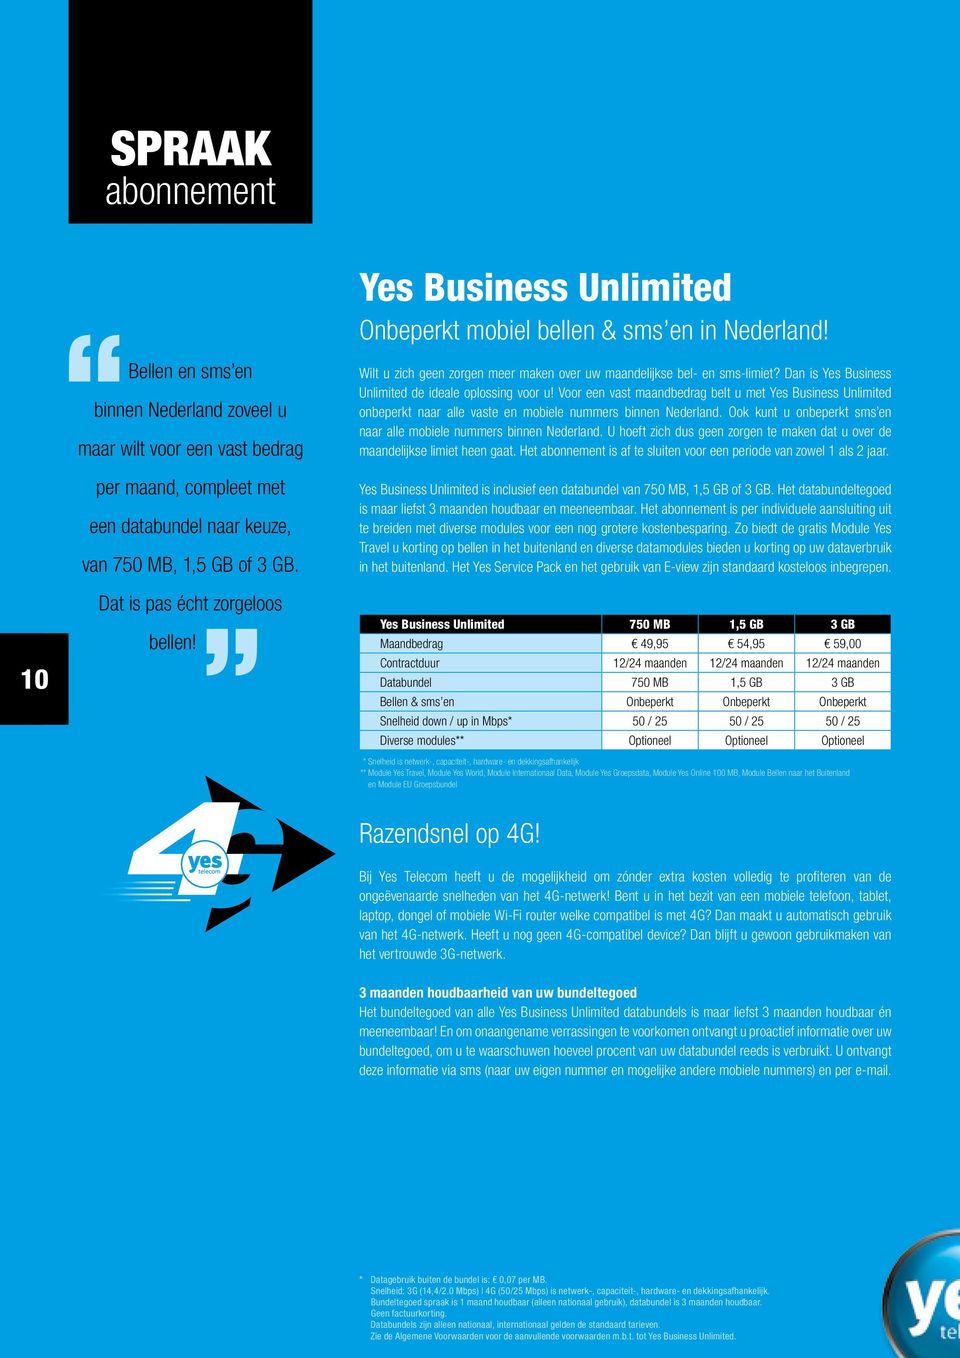 Dan is Yes Business Unlimited de ideale oplossing voor u! Voor een vast maandbedrag belt u met Yes Business Unlimited onbeperkt naar alle vaste en mobiele nummers binnen Nederland.